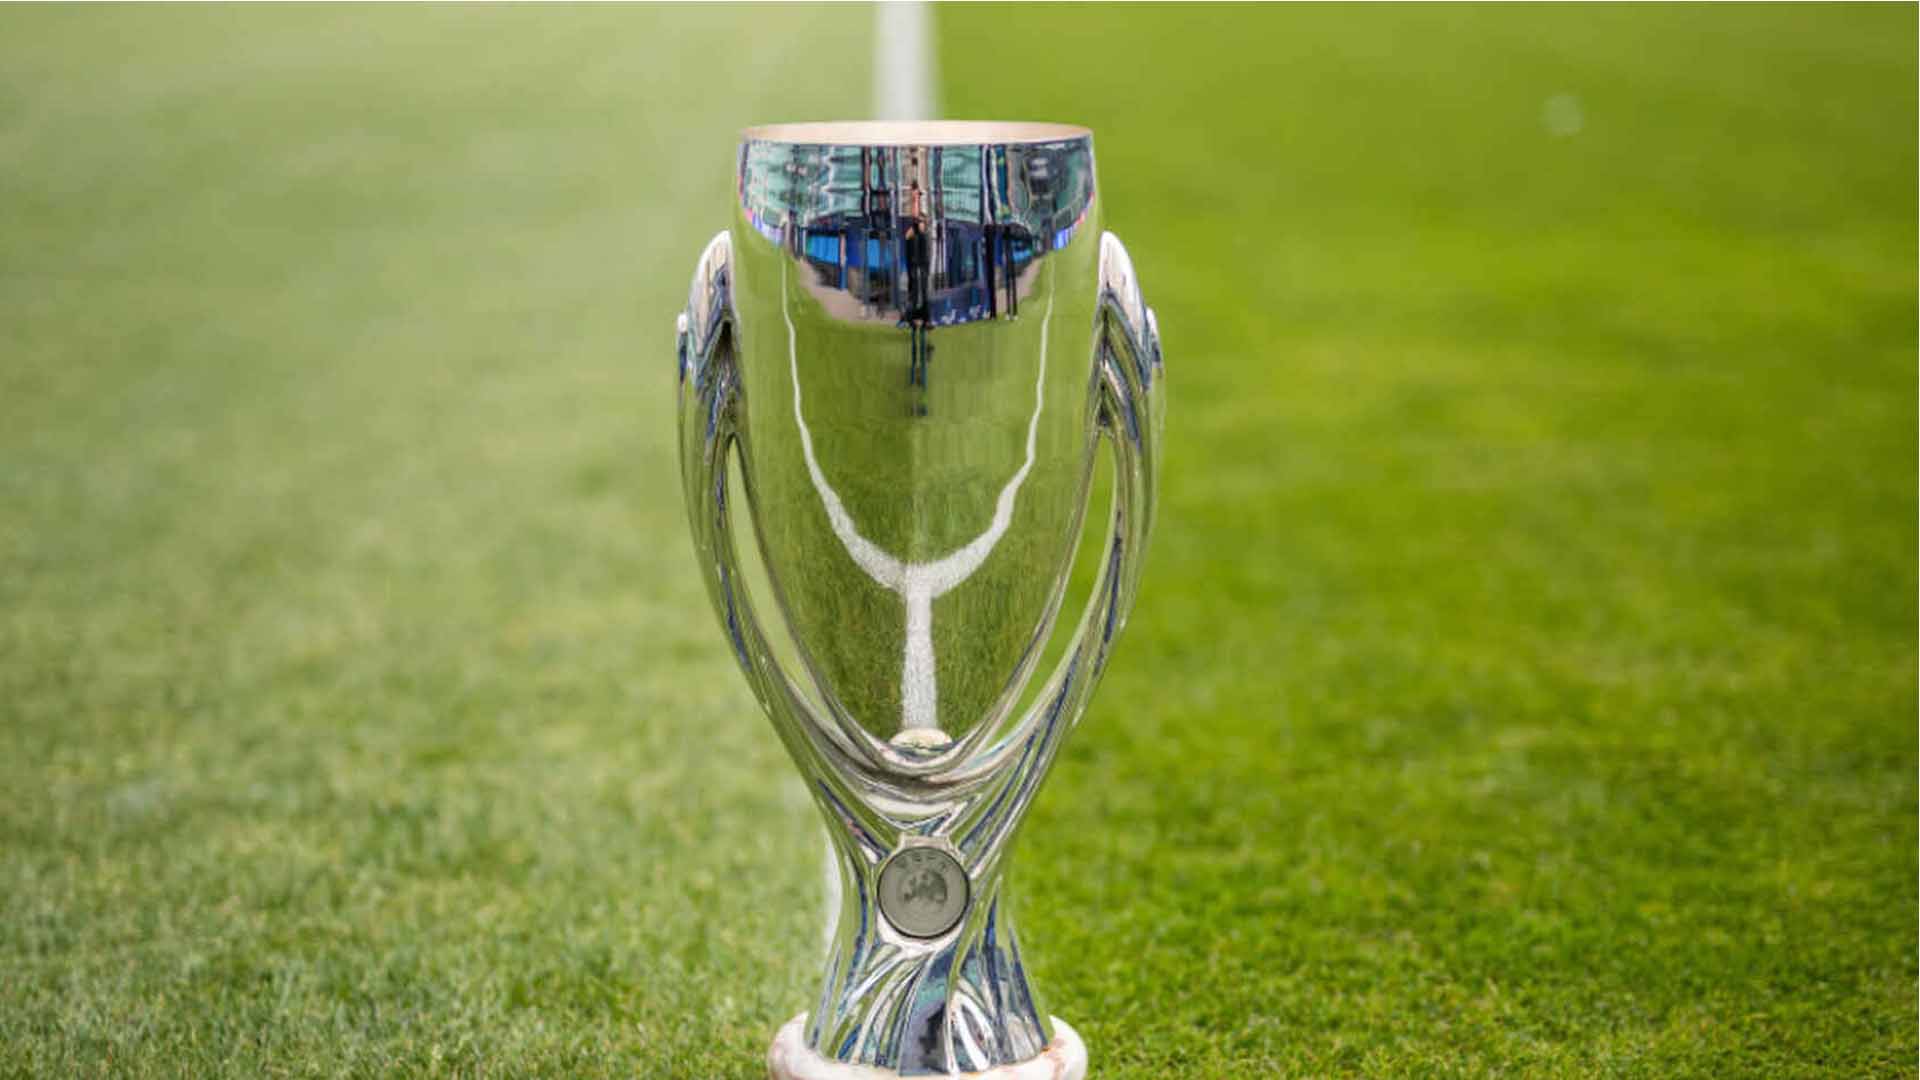 Fanáticos esperan asistir a Supercopa de Europa en primer partido con público de la Uefa